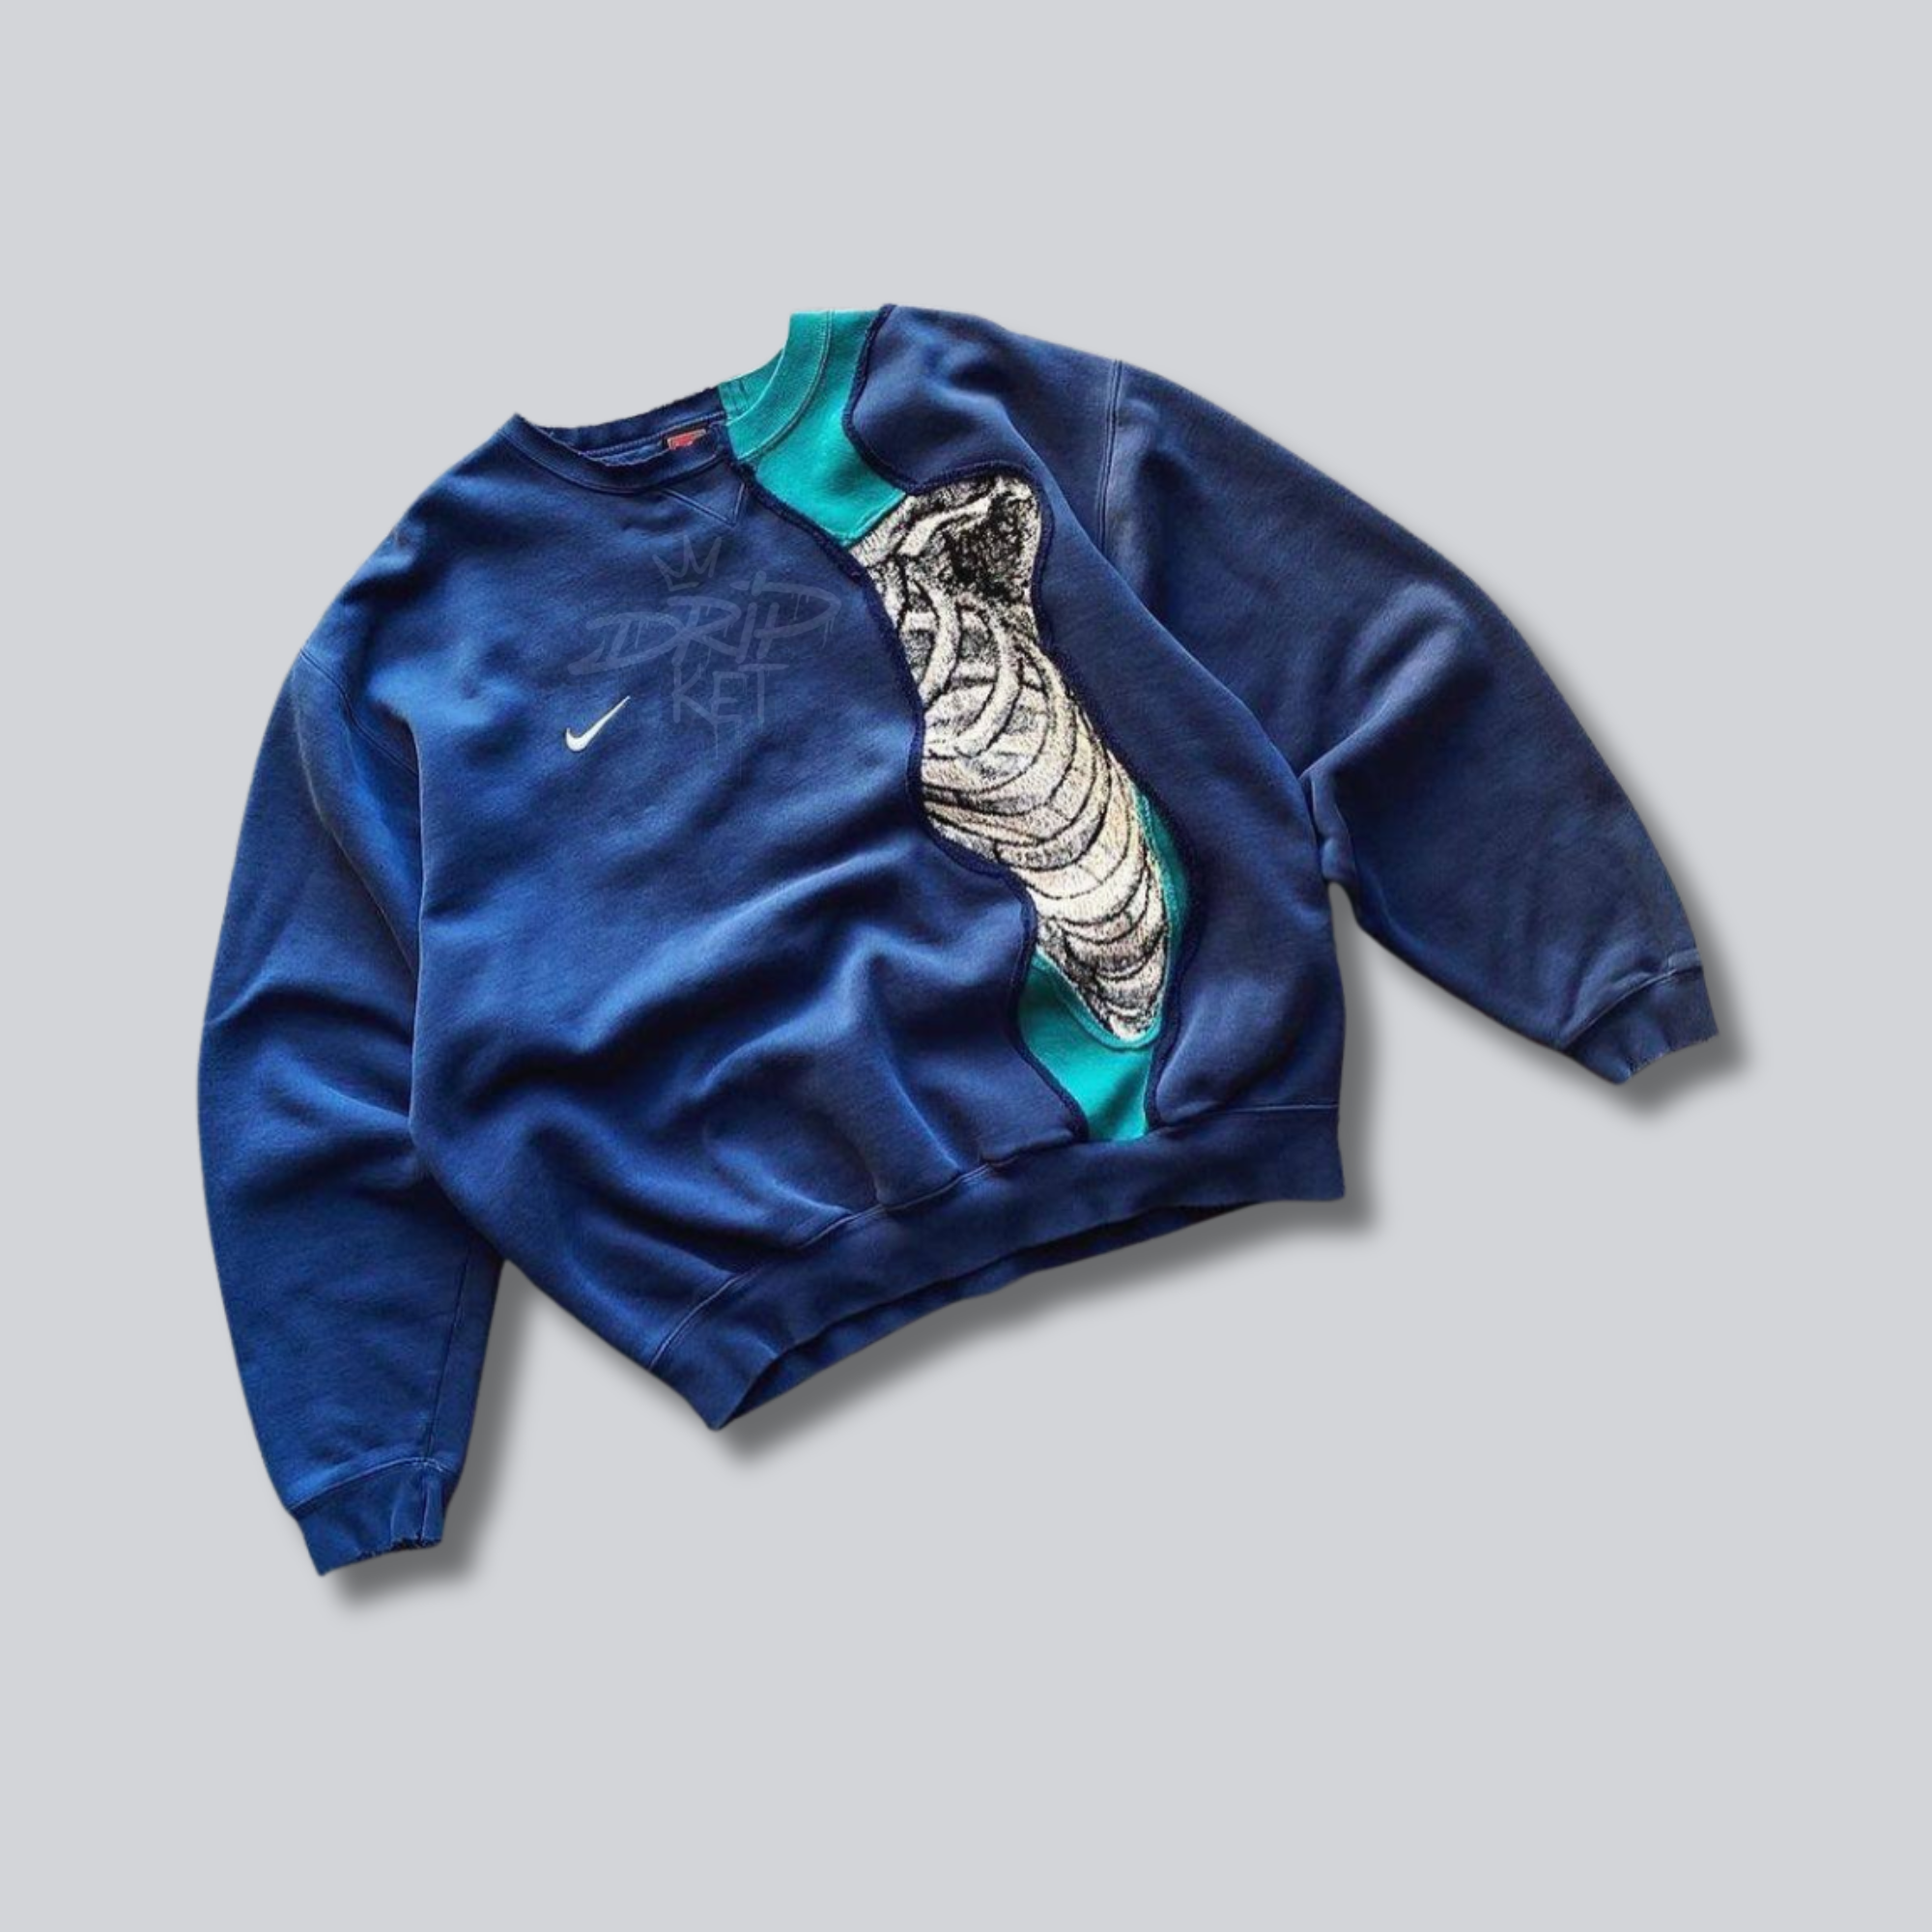 Custom Nike Reworked Sweatshirt